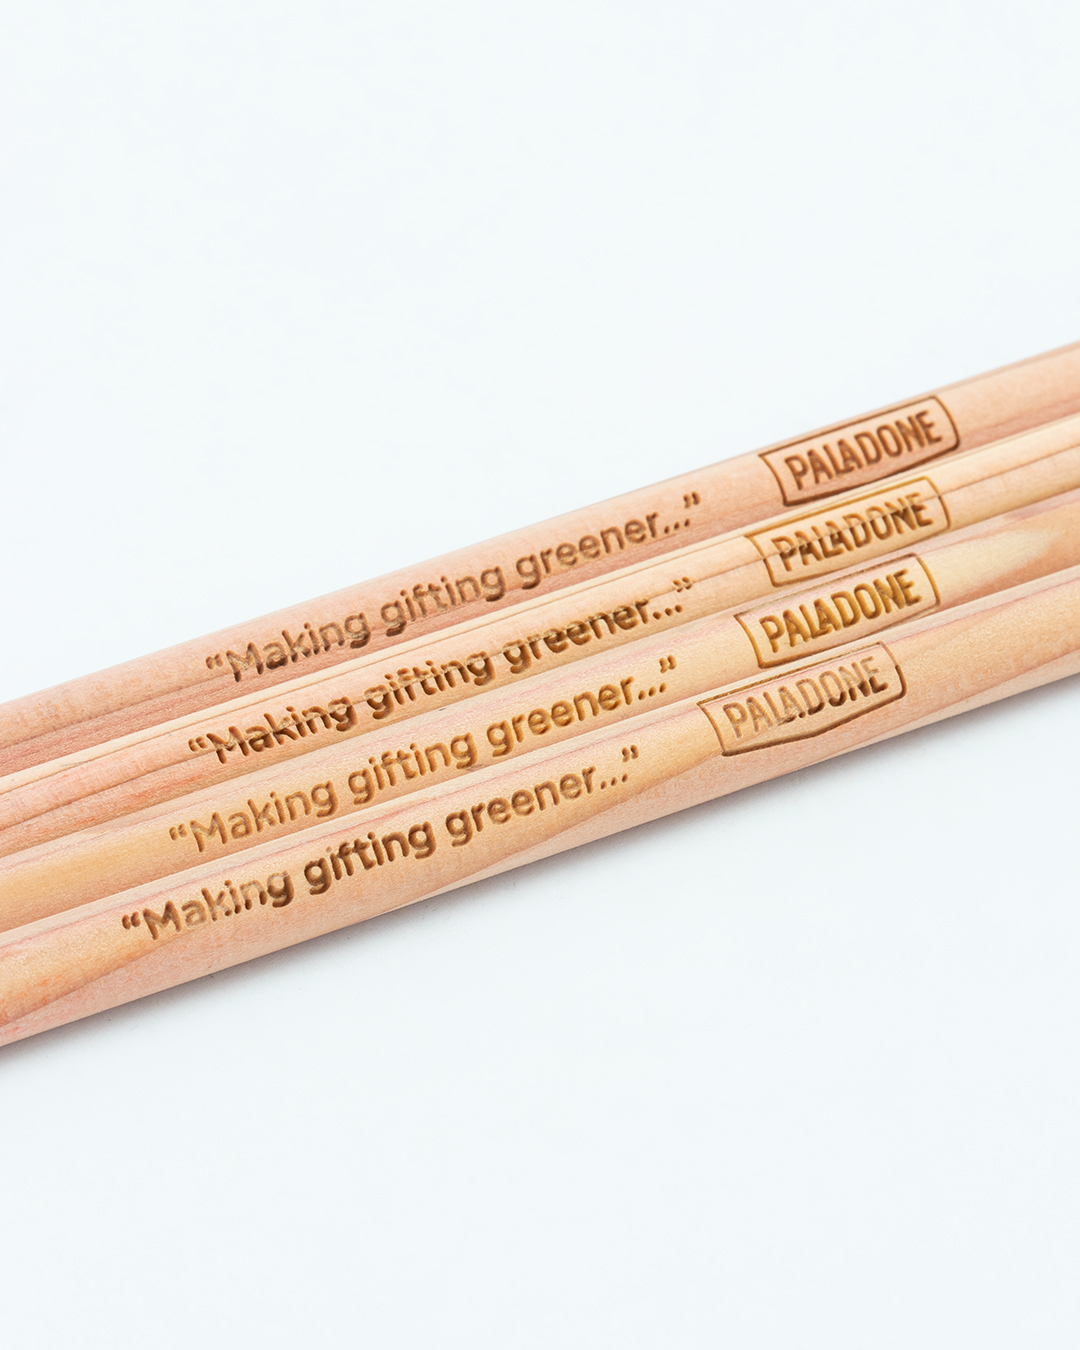 Our new pencils! #MakingGiftingGreener